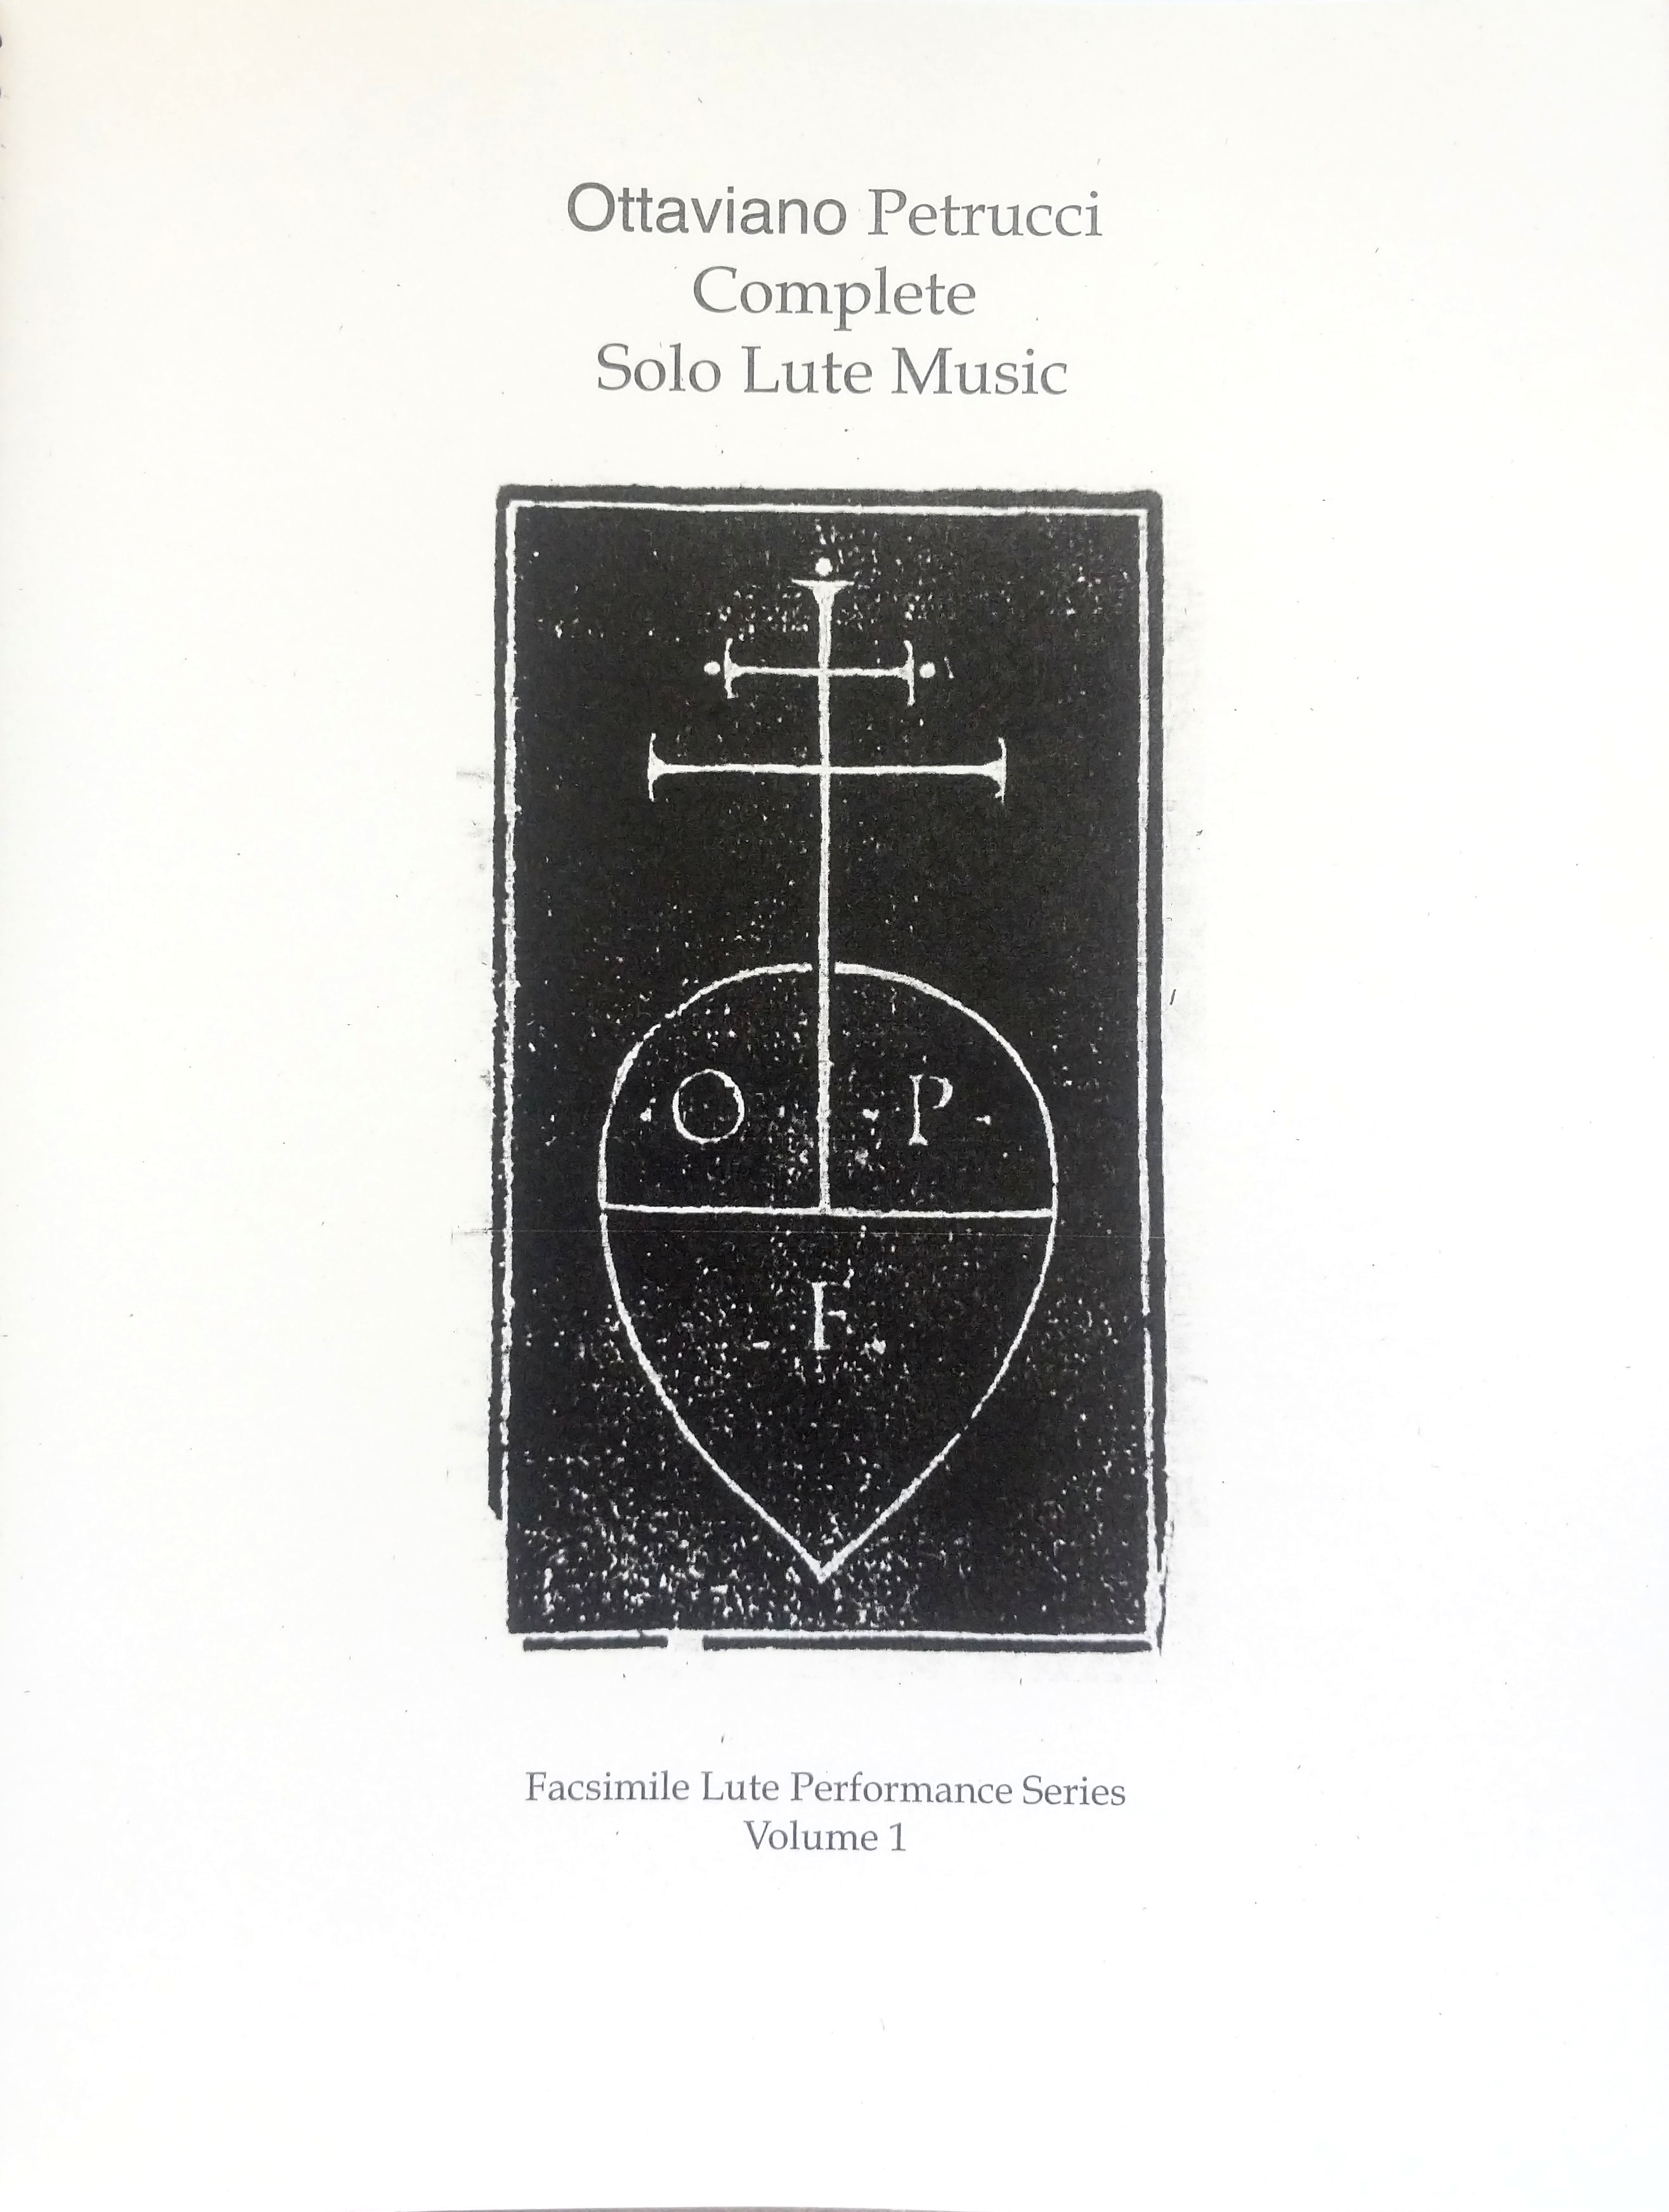 The cover of Ottaviano Petrucci Complete Solo Lute Music.